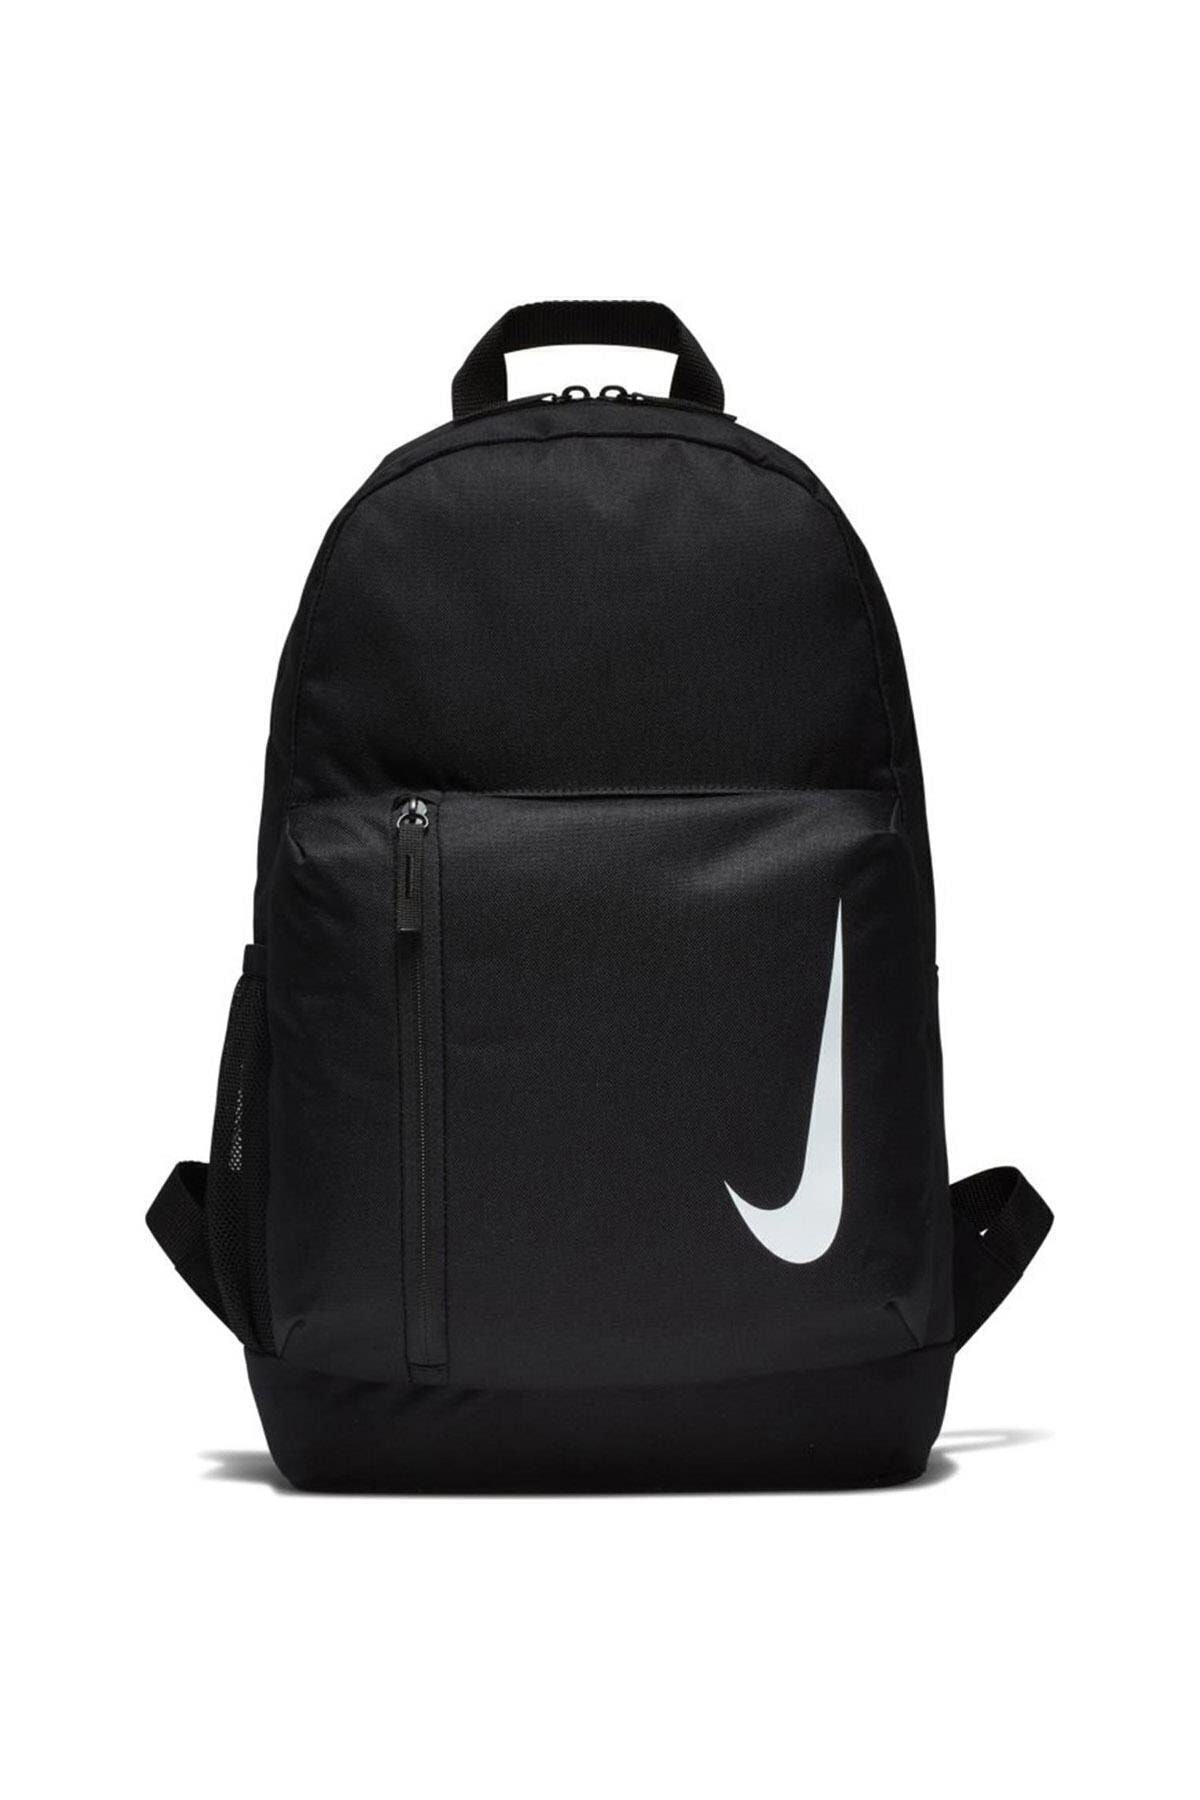 Nike Academy Team Çantası Spor Unisex BA5773-010 Fiyatı, Yorumları - Trendyol